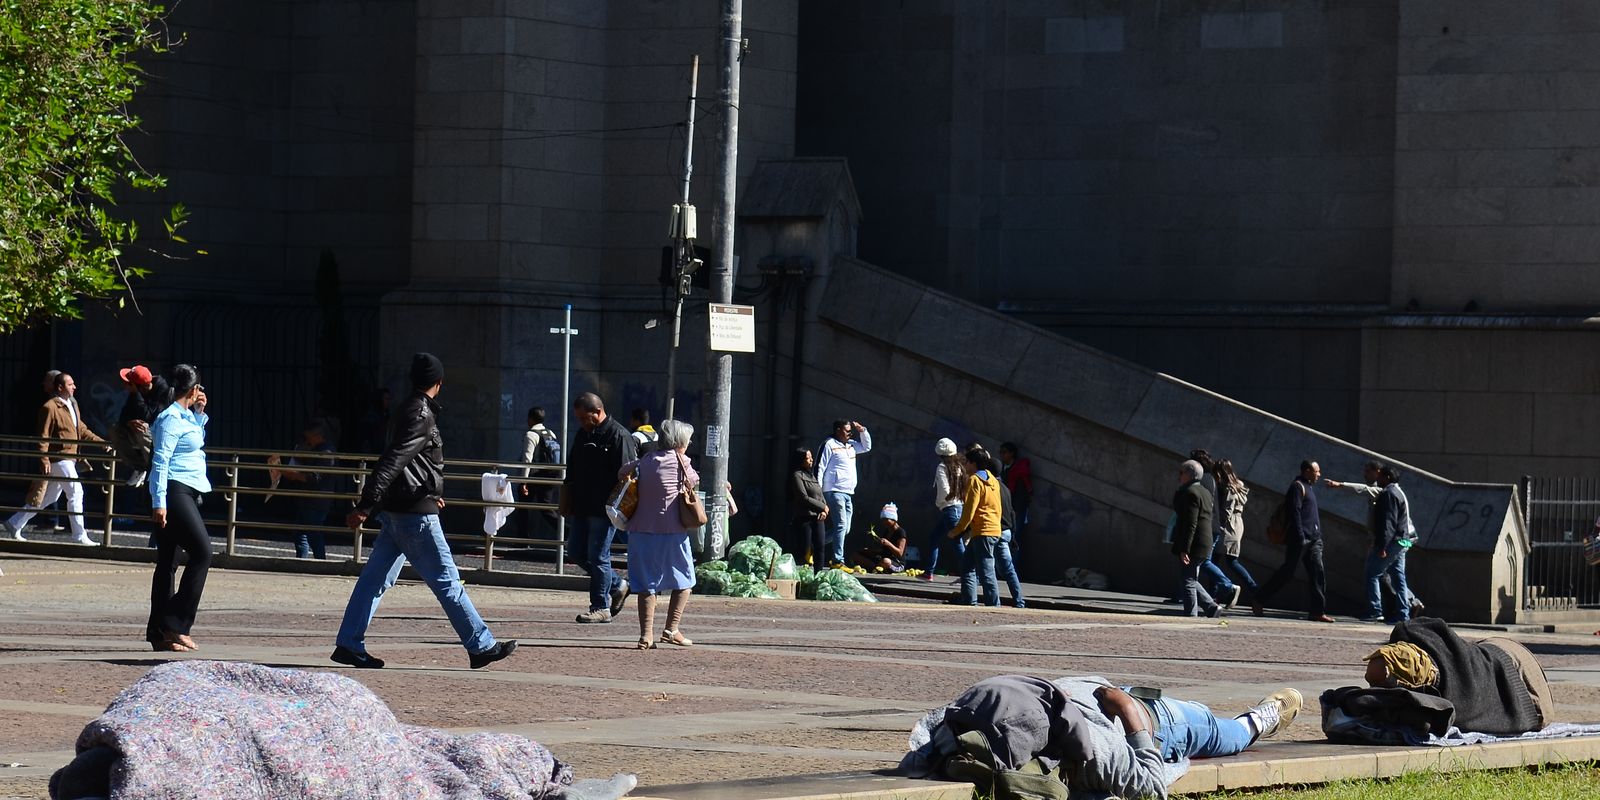 Praça da Sé ganha obra em respeito à população em situação de rua, Secretaria Municipal de Direitos Humanos e Cidadania